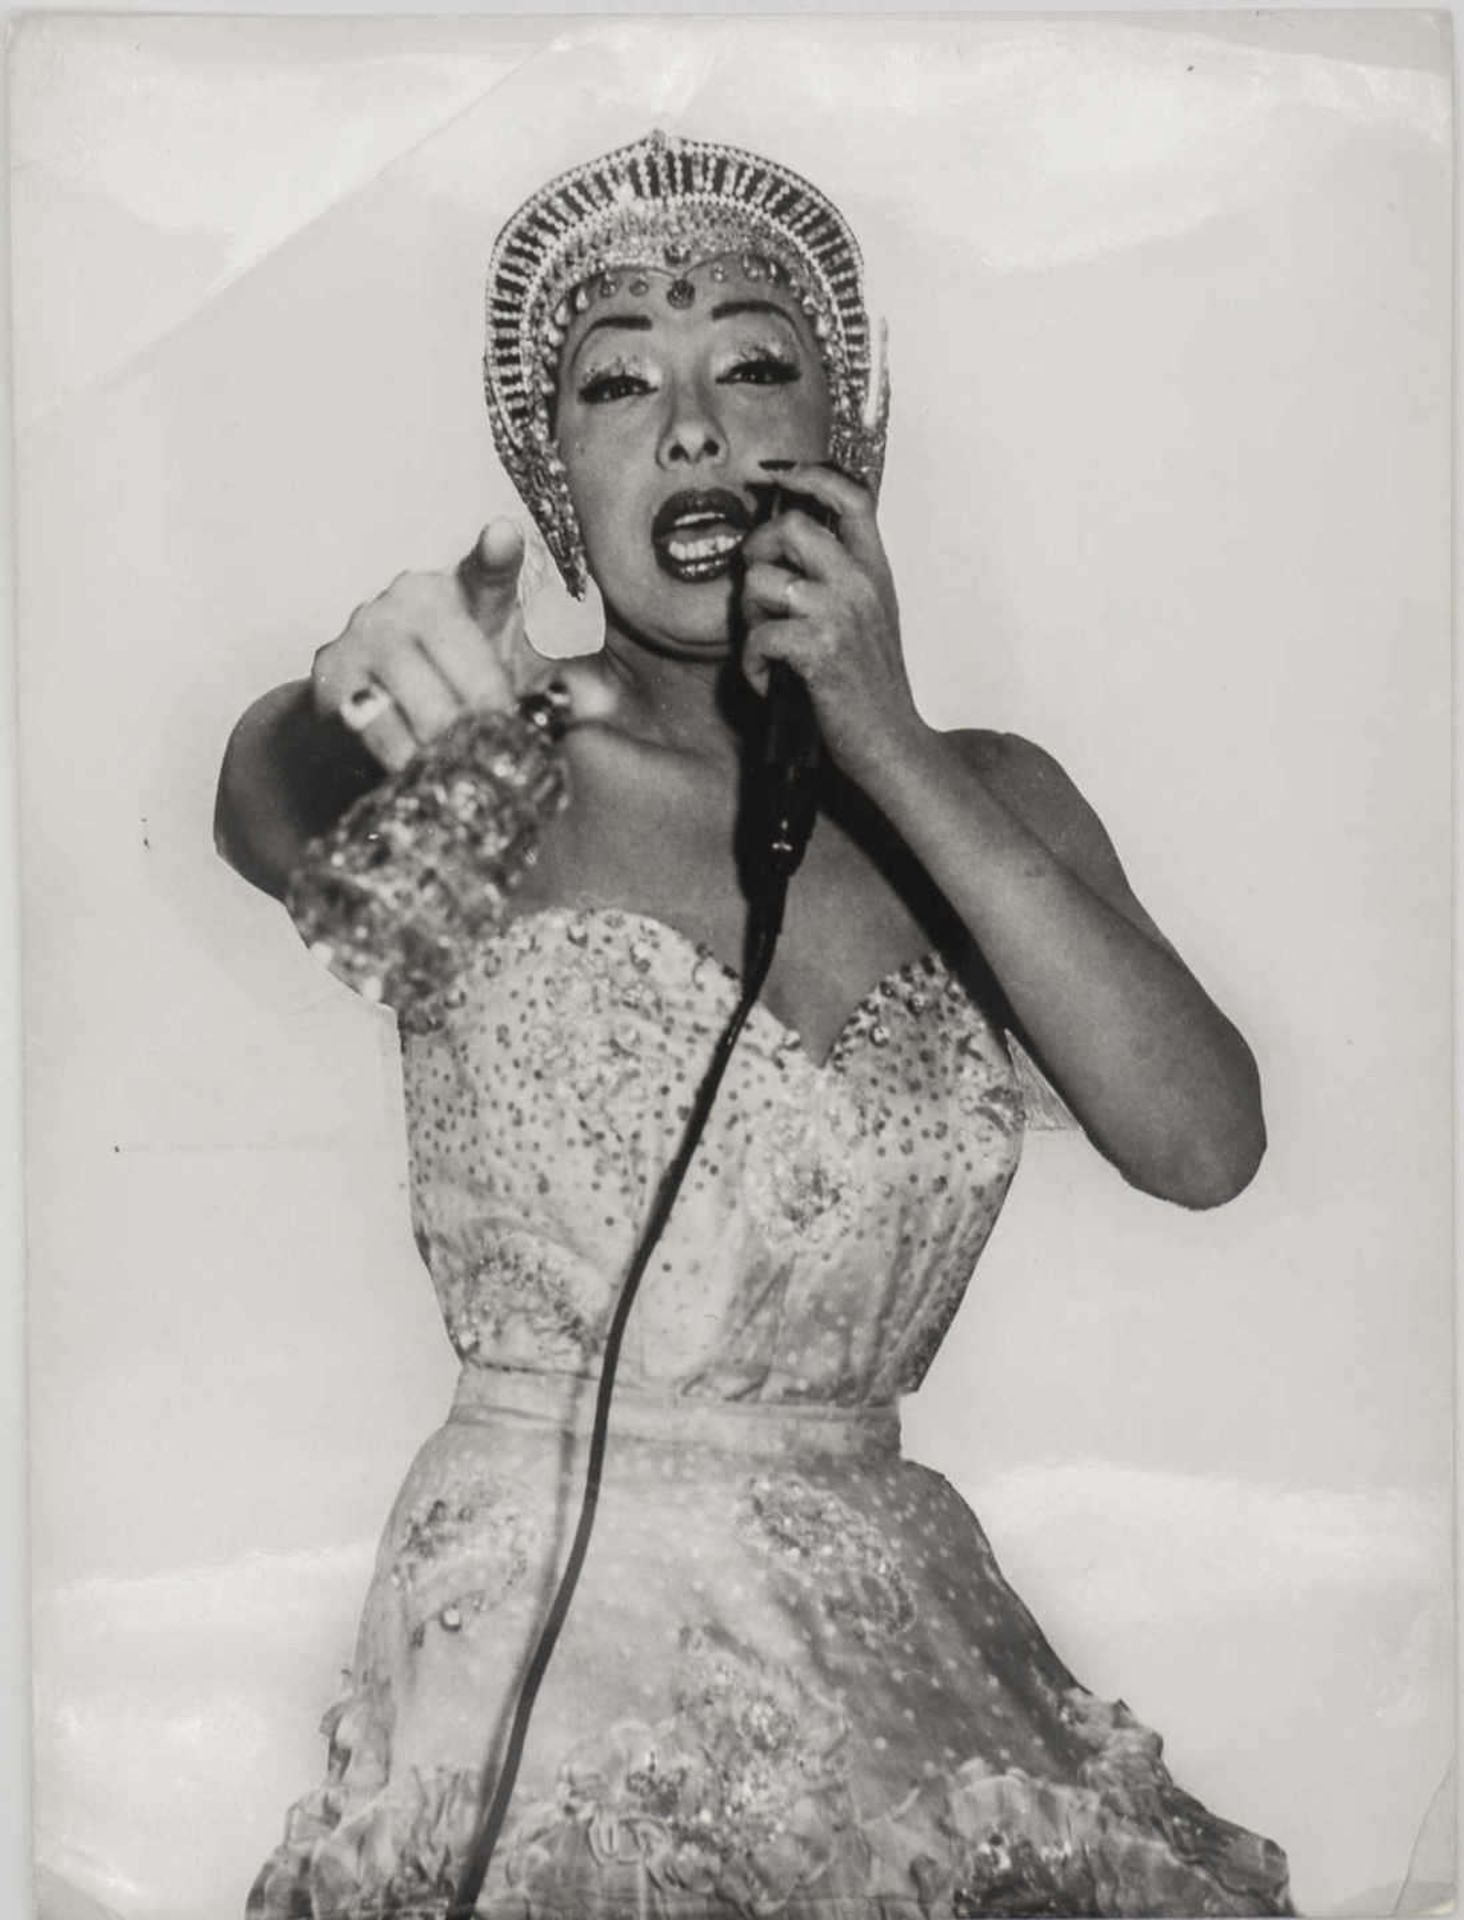 Presse - Foto "Josephine Baker". 1959. Original DPA - Bild. Maße: ca. 21 cm x ca. 16 cm.